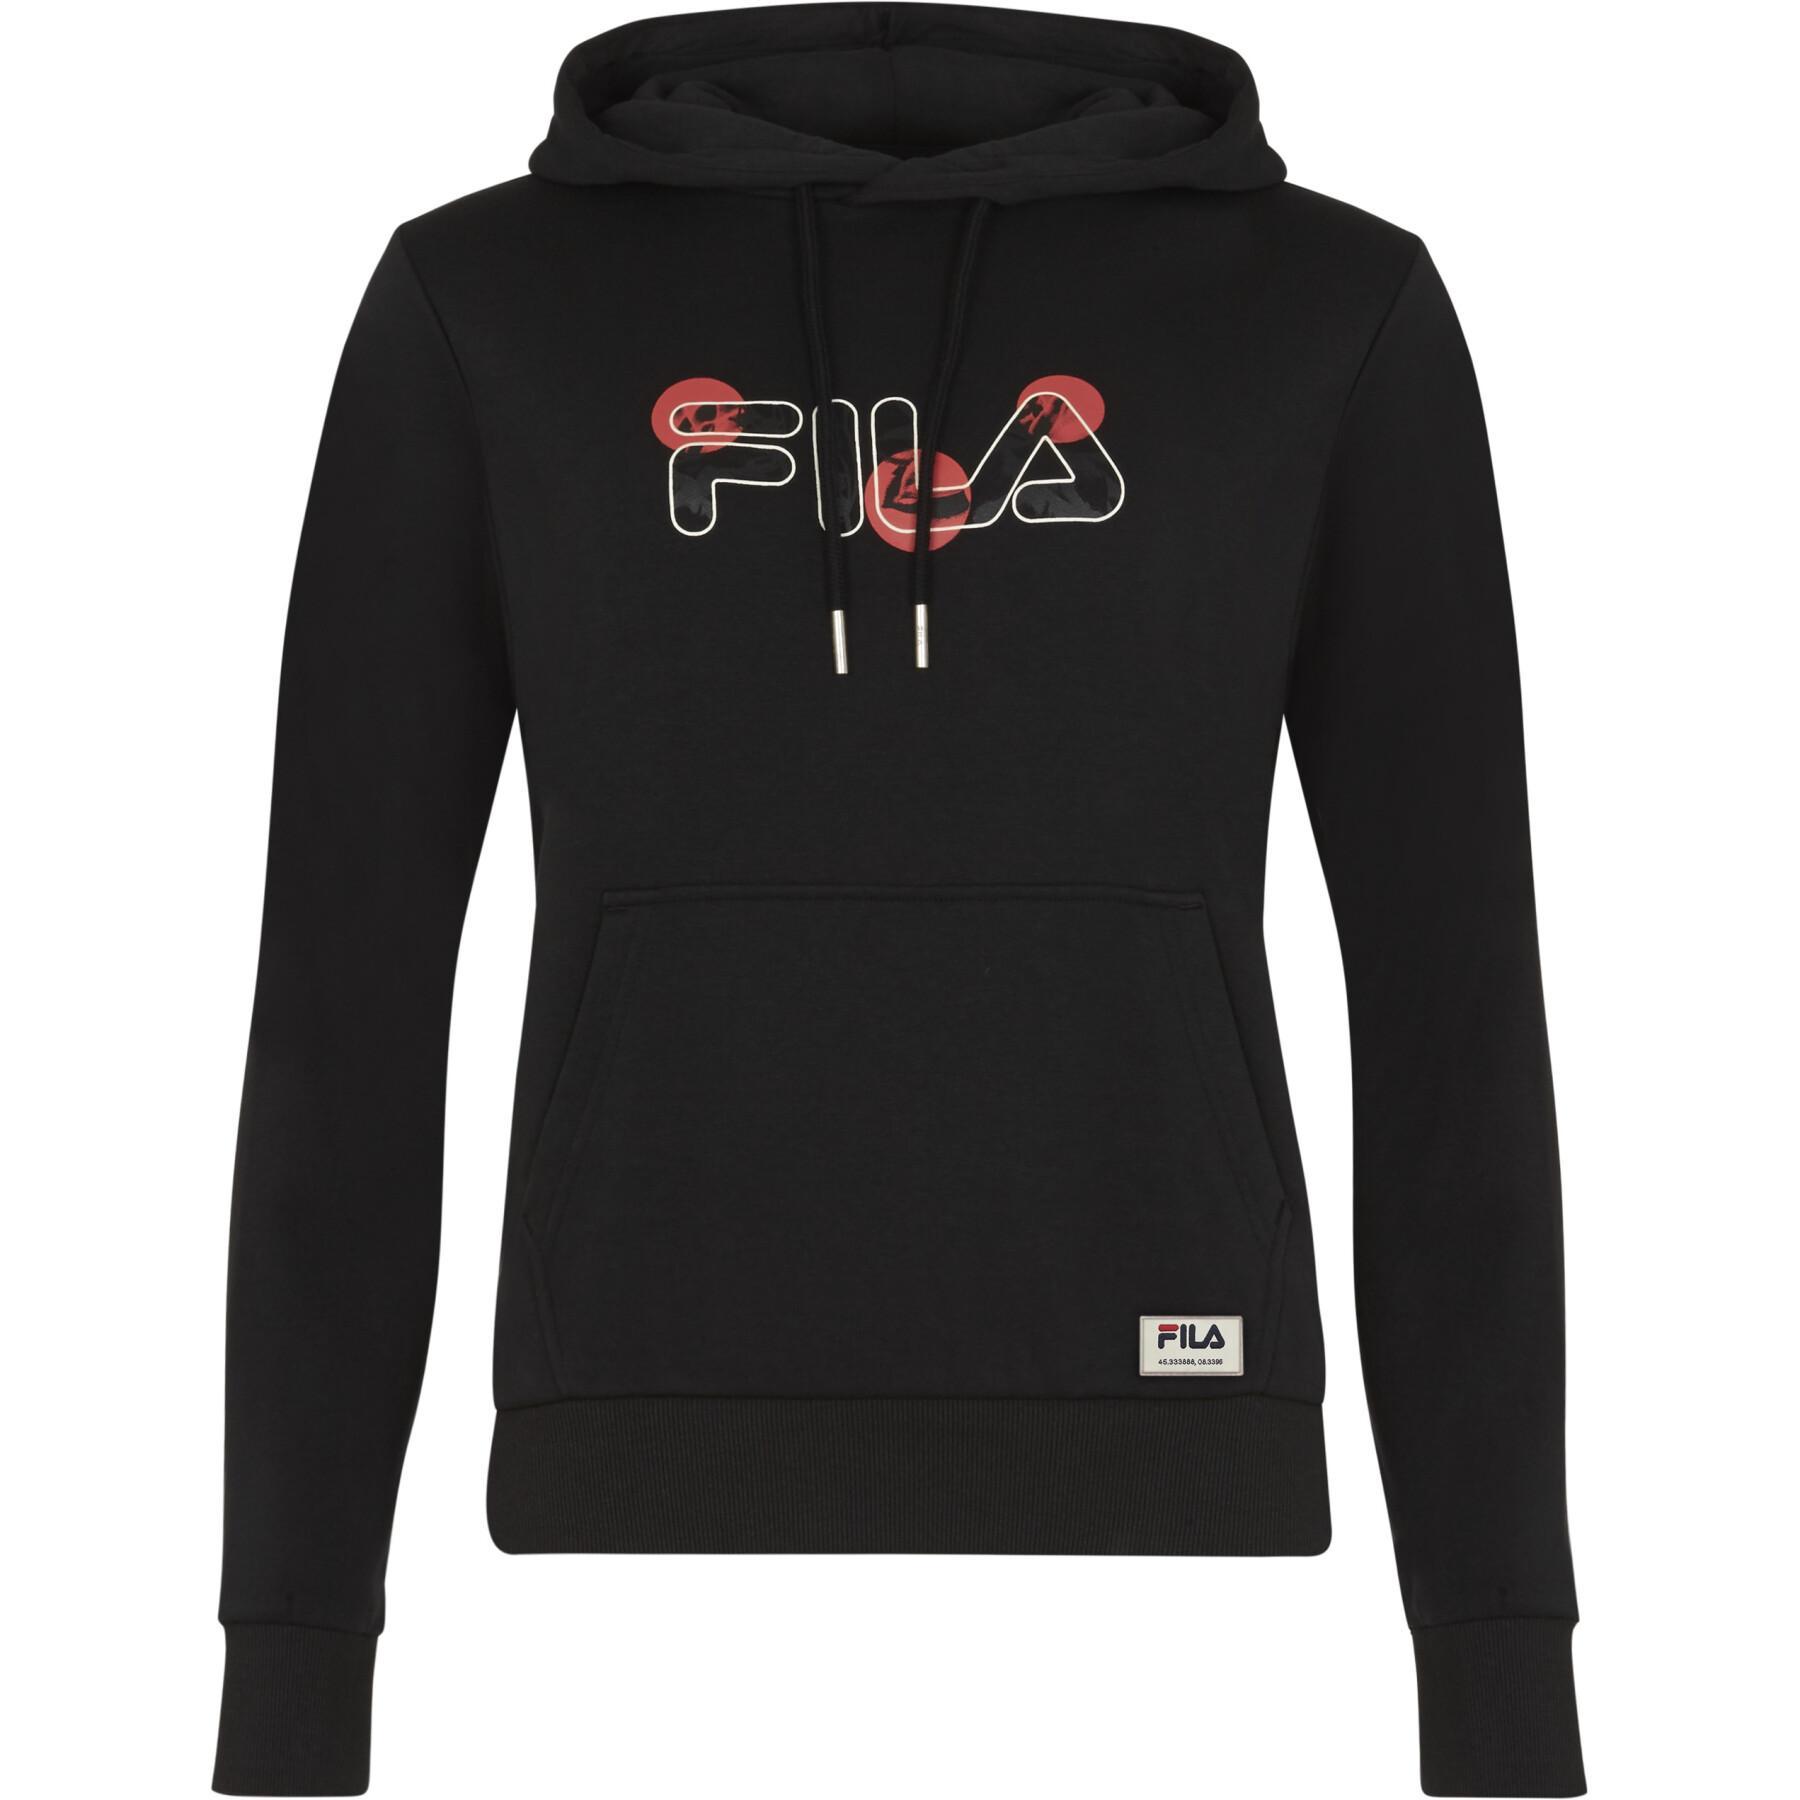 Women's hooded sweatshirt Fila Bellagio